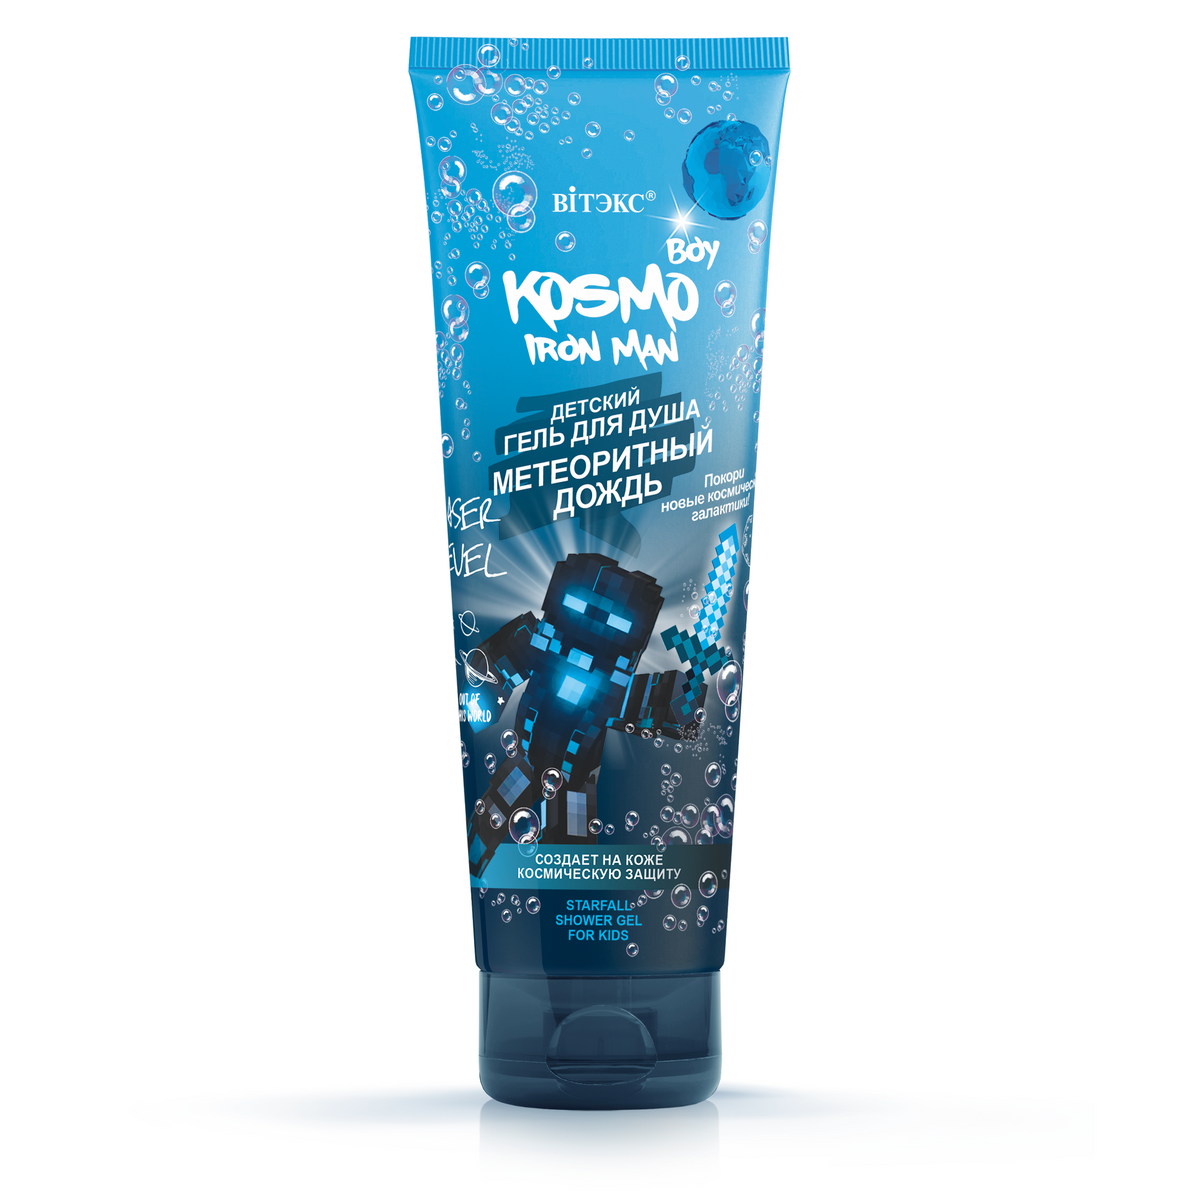 Kosmo Boy Iron Man Çocuklar İçin Duş Jeli (250 ml) | Auraline Cosmetics